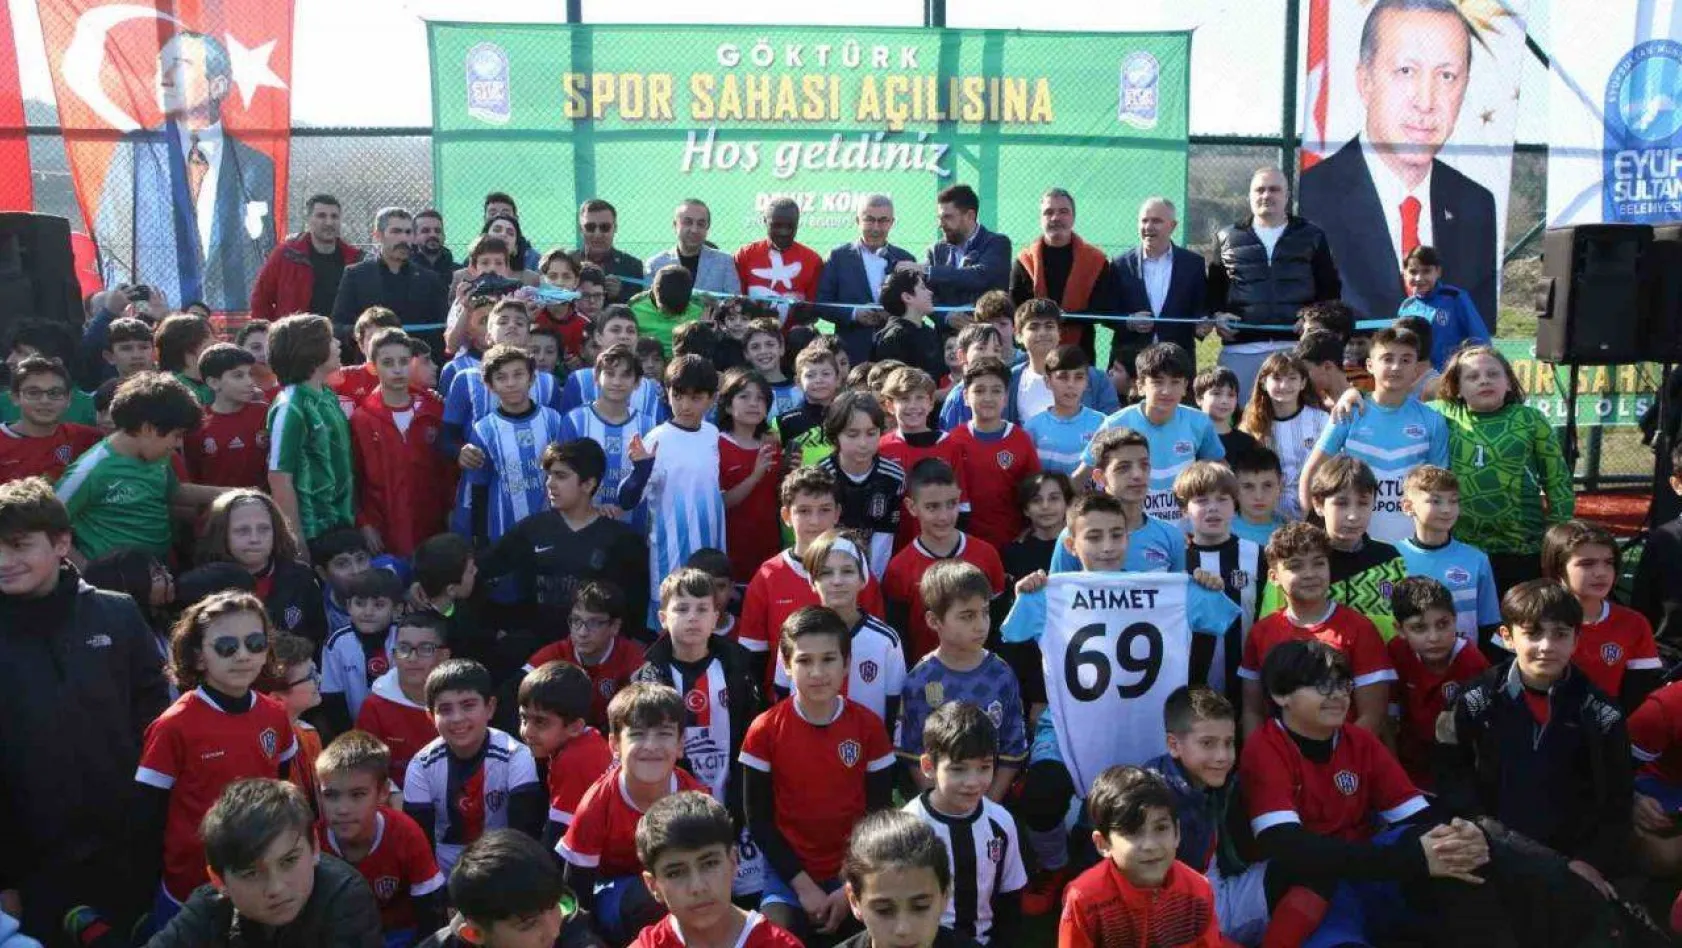 Eyüpsultan'da yapımı tamamlanan 'Göktürk Spor Sahası ve tesisleri' futbol tutkunlarıyla buluştu